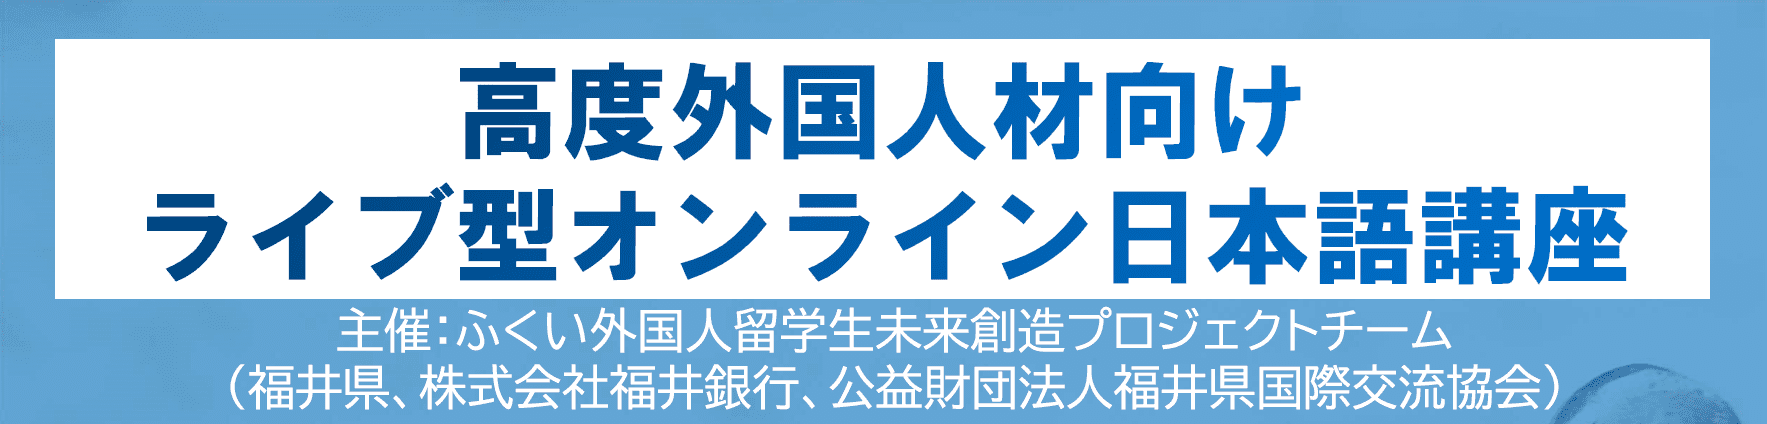 福井県の高度外国人材向けライブ型オンライン日本語講座の紹介